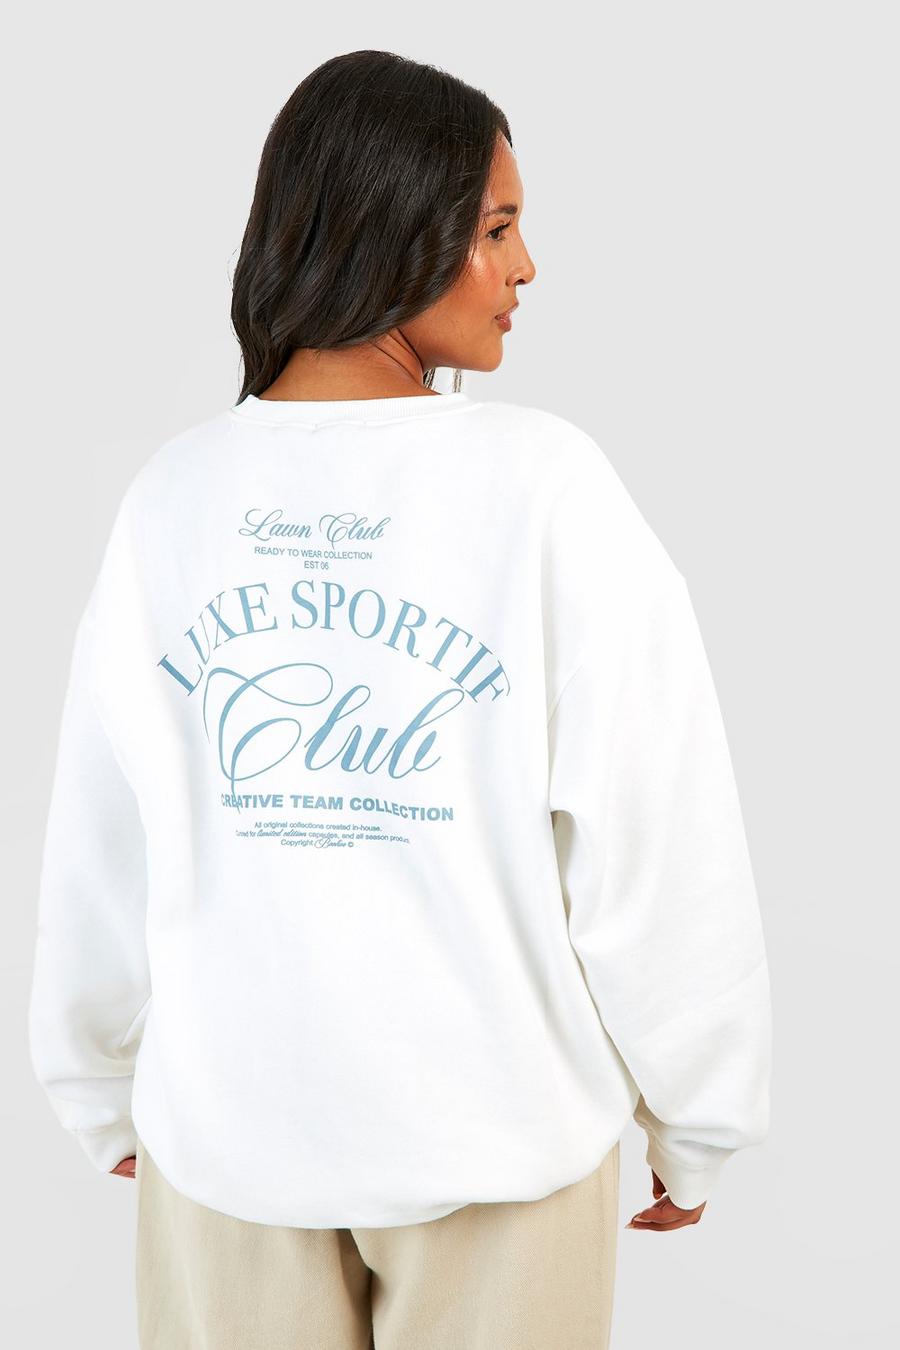 Grande taille - Sweat à slogan Sports Club, Ecru blanc